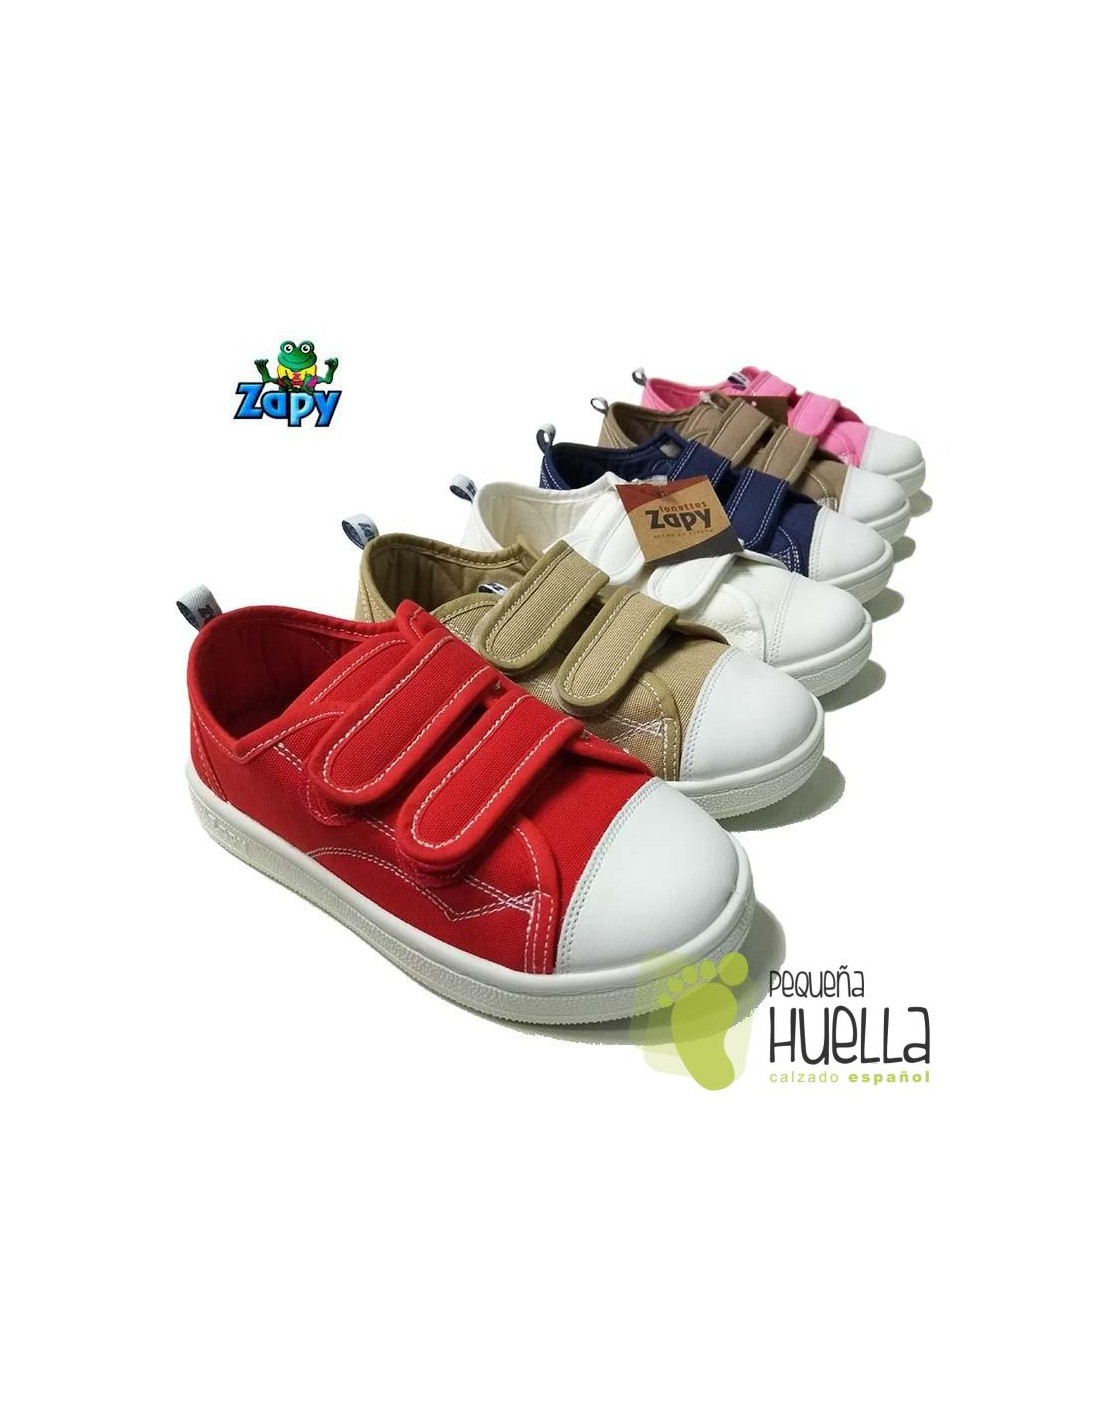 Comprar zapatillas, bambas o playeras de lona con velcro de Zapy para niños y online en Madrid